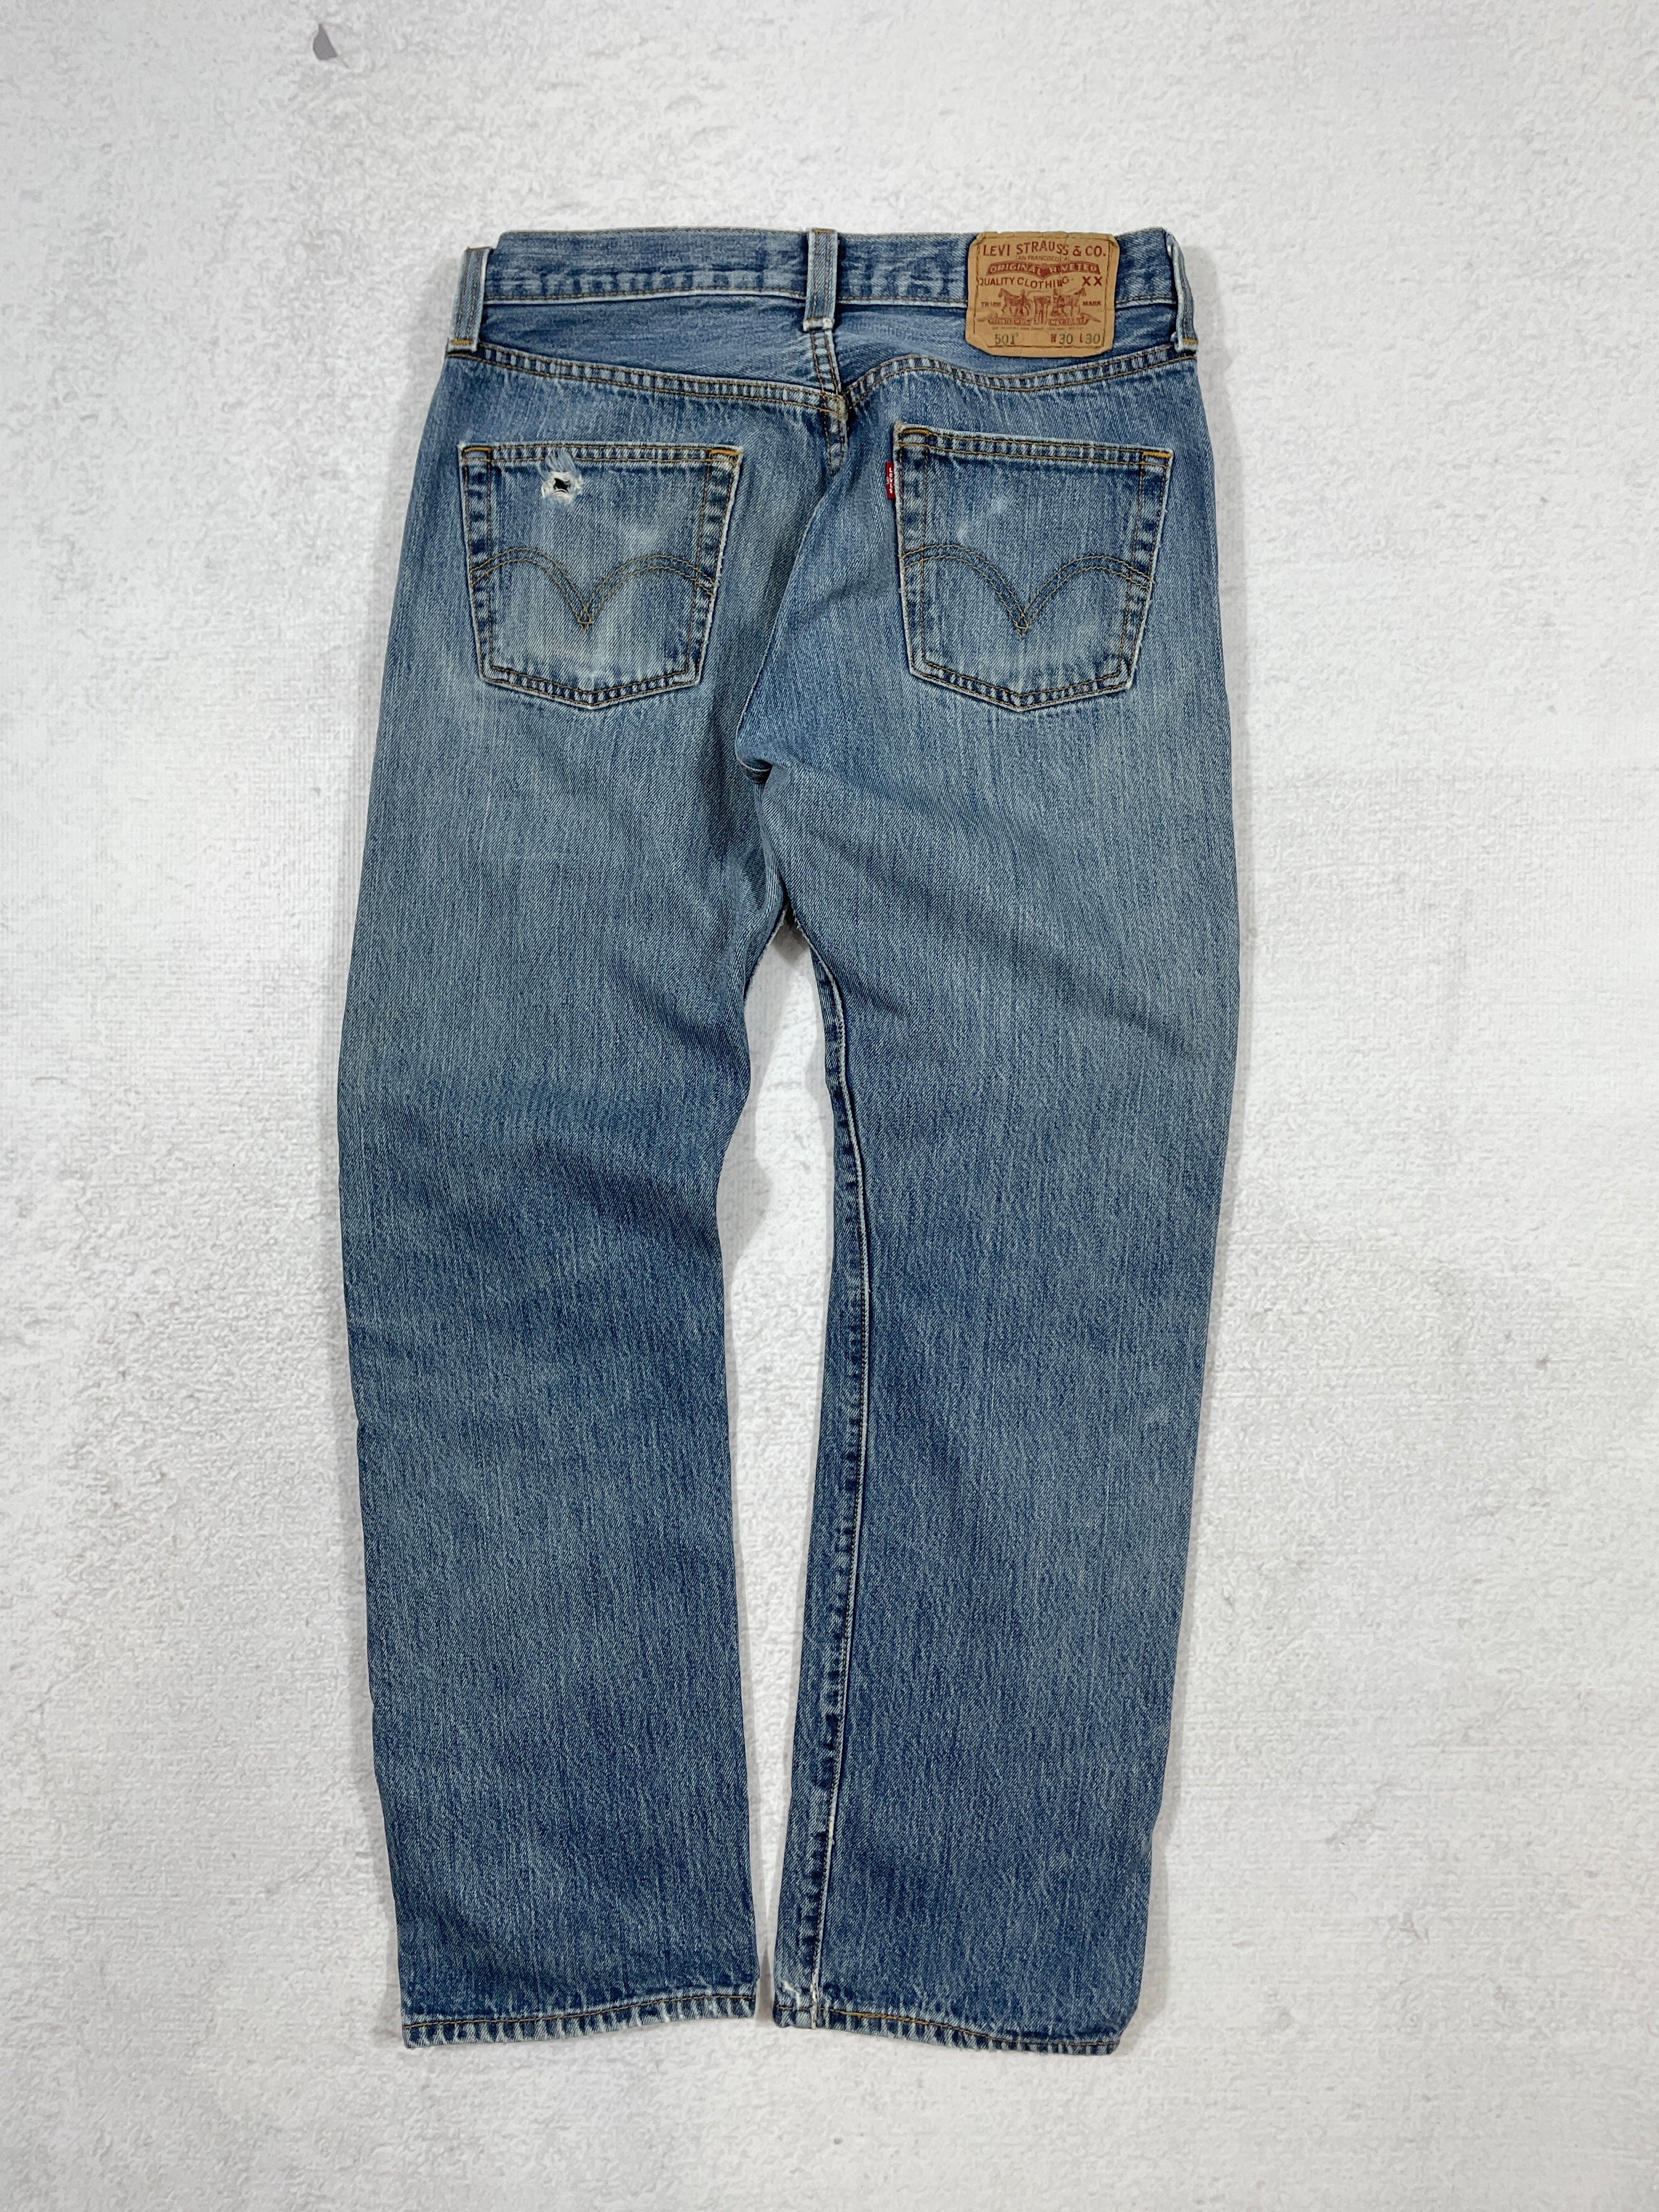 Vintage Levis 501 Jeans  - Men's 30Wx30L